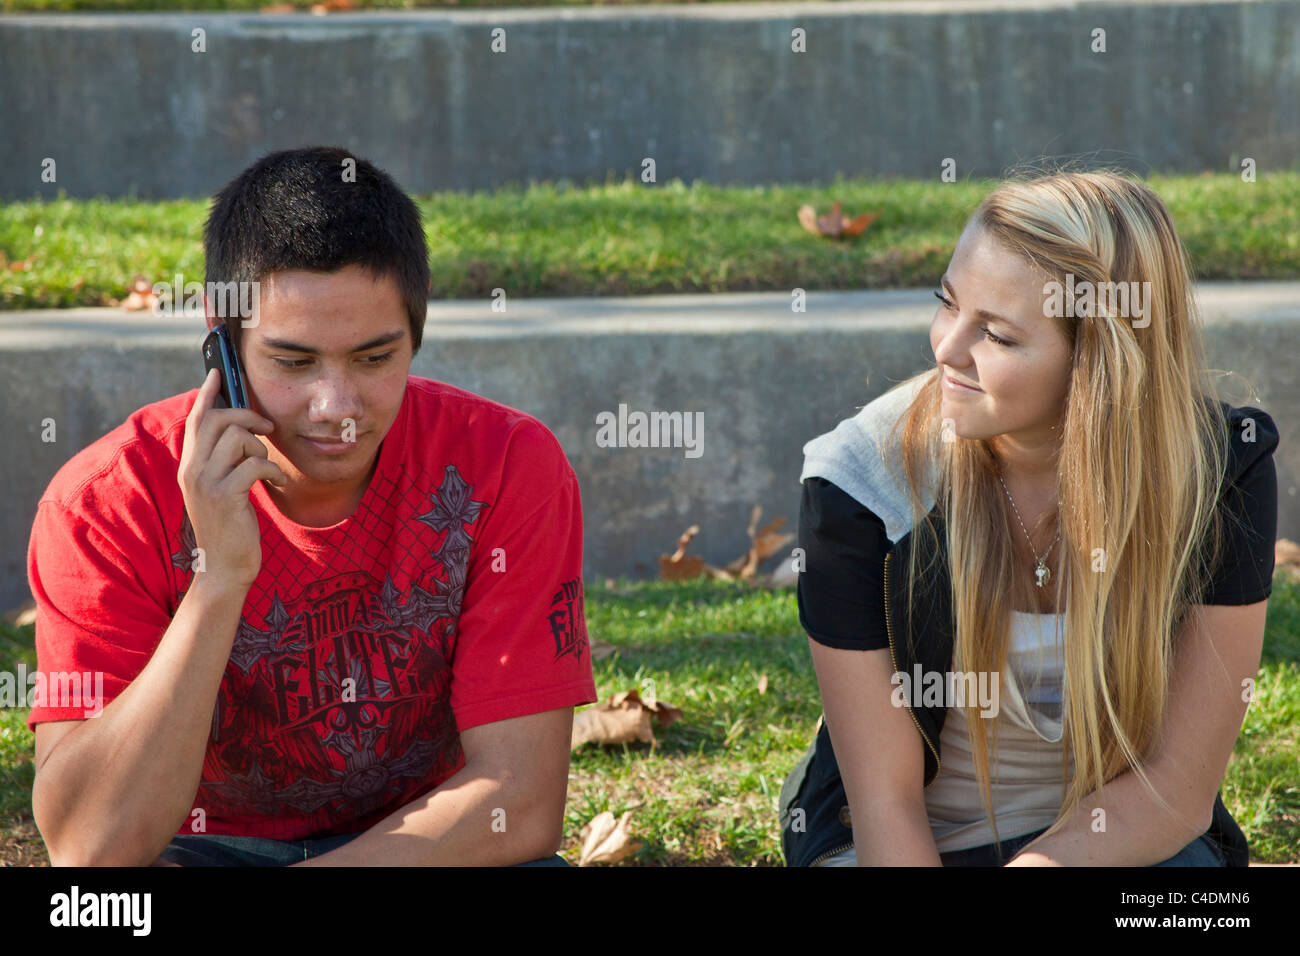 Deux jeunes de 14-16 ans une diversité ethnique raciale ethnique plusieurs adolescents parler de l'utilisation de l'iPhone téléphone mobile Américain hispanique indien Pieds-Noirs Banque D'Images